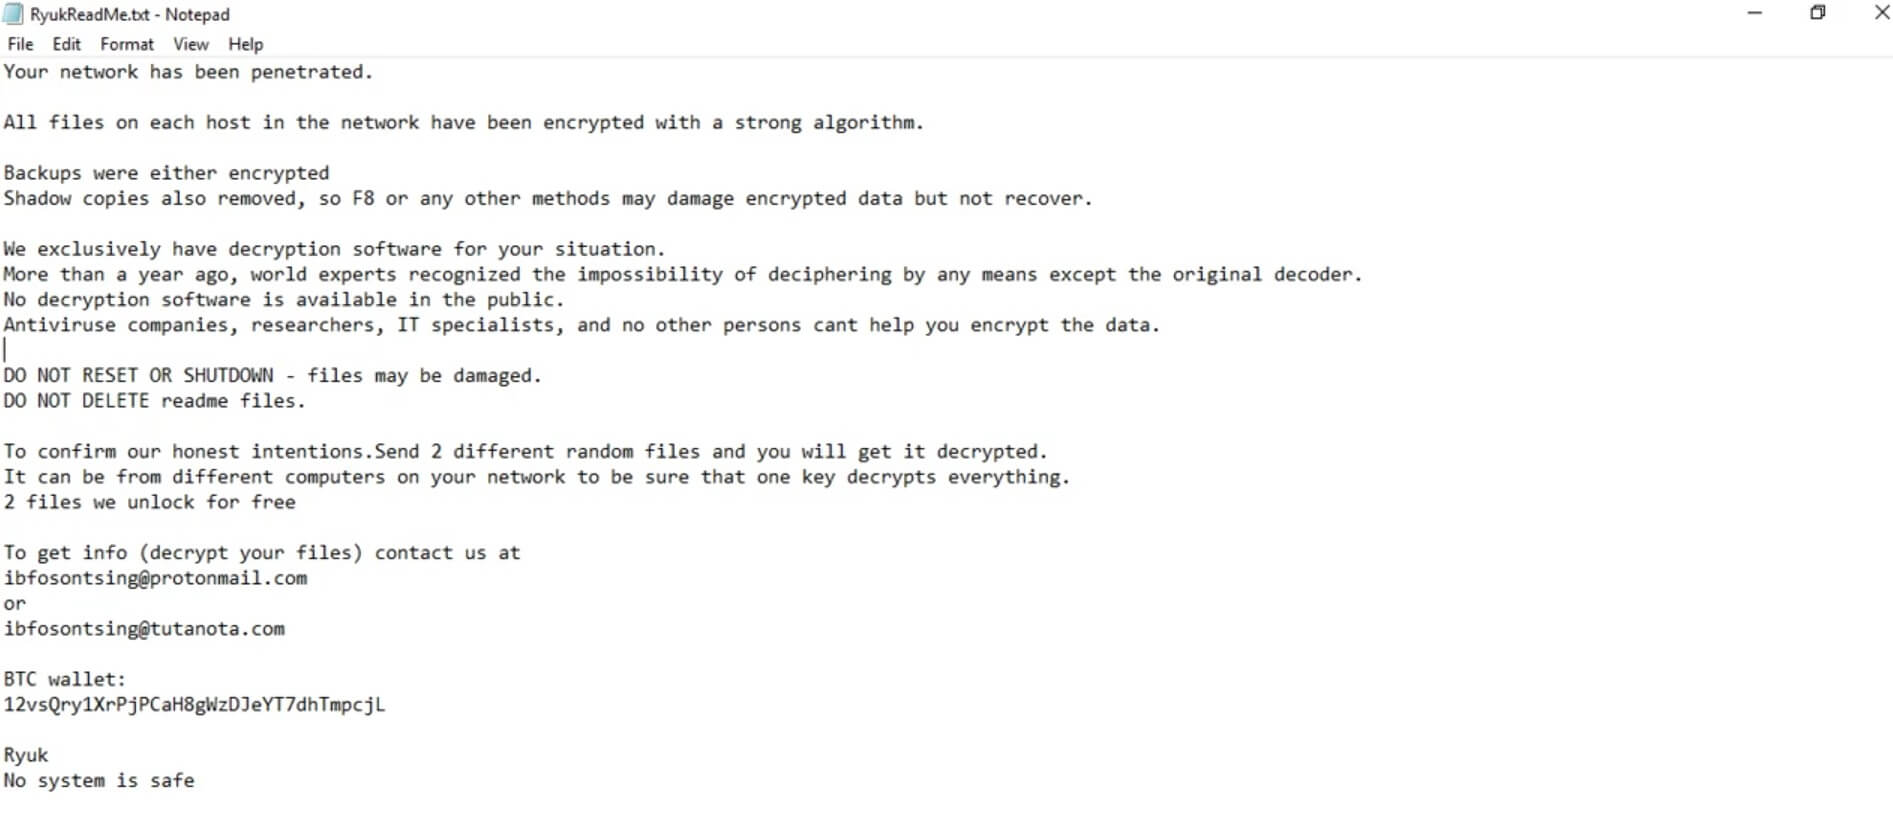 Ryuk ransomware virus RYK udvidelse løsesum notat besked